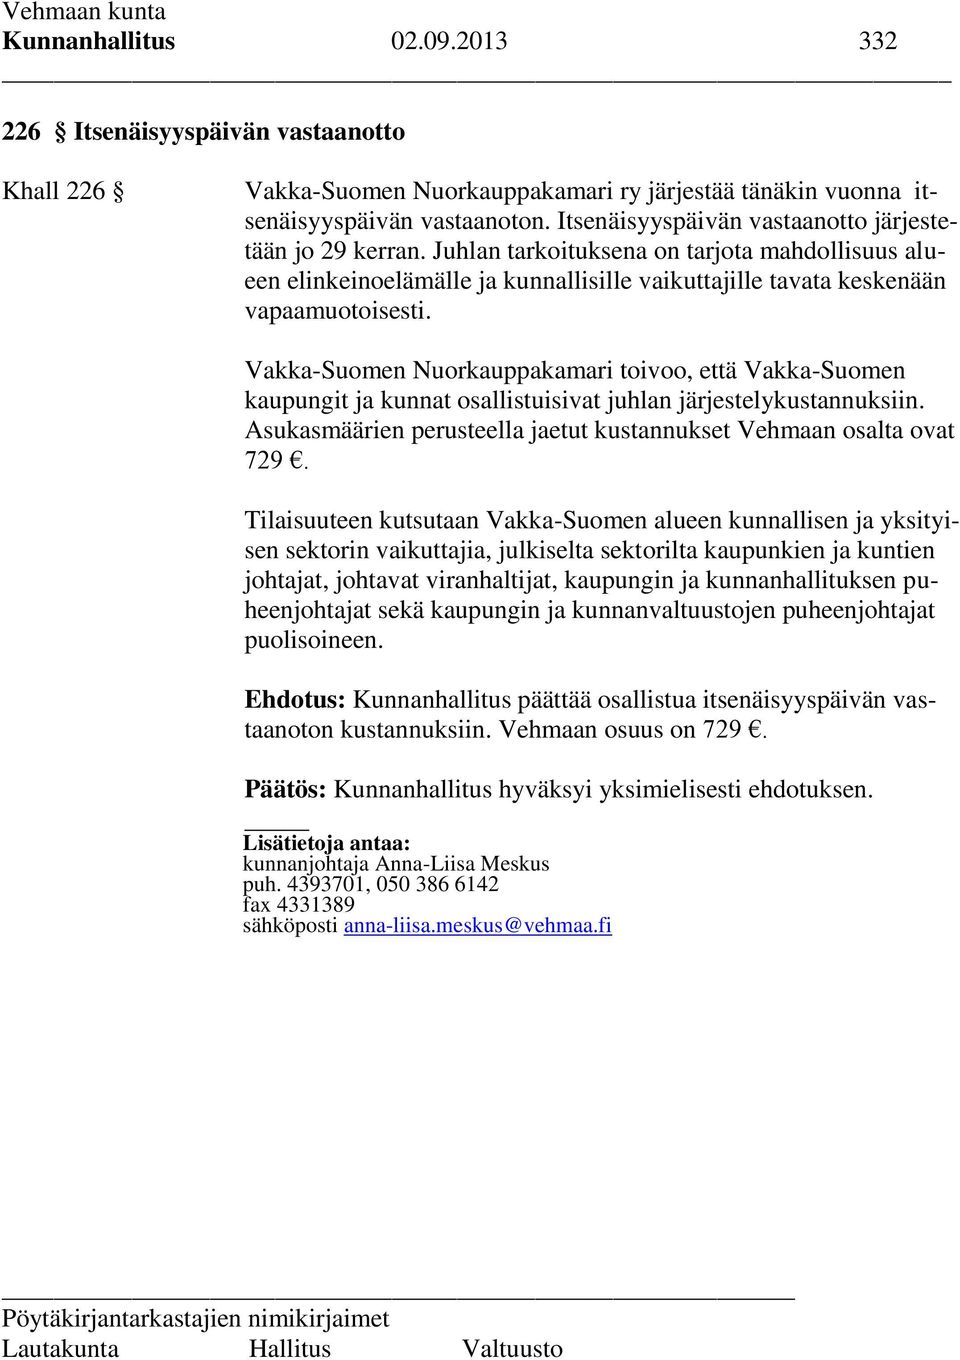 Vakka-Suomen Nuorkauppakamari toivoo, että Vakka-Suomen kaupungit ja kunnat osallistuisivat juhlan järjestelykustannuksiin. Asukasmäärien perusteella jaetut kustannukset Vehmaan osalta ovat 729.